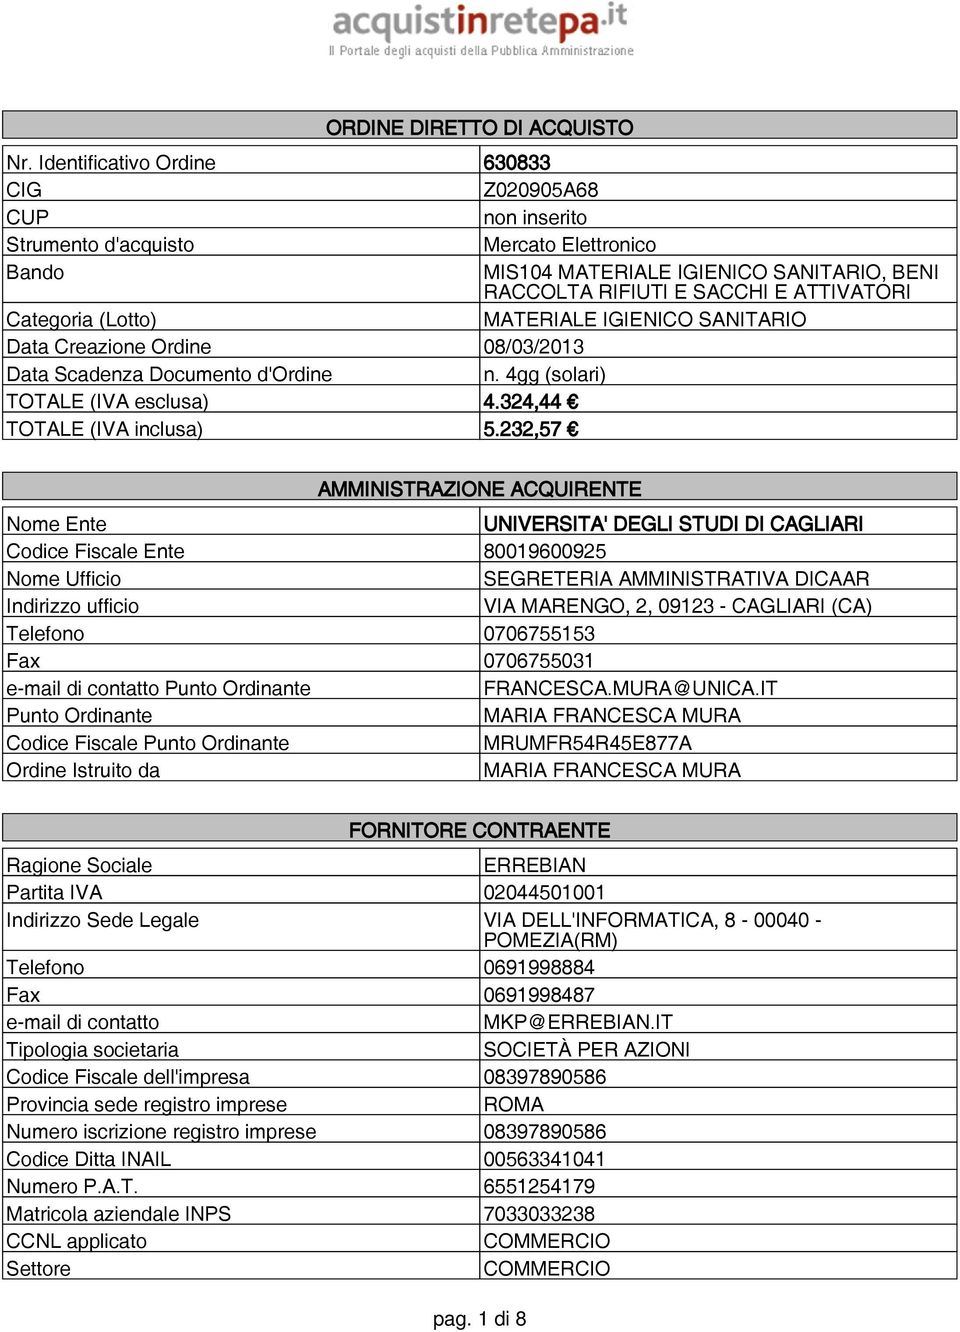 (Lotto) MATERIALE IGIENICO SANITARIO Data Creazione Ordine 08/03/2013 Data Scadenza Documento d'ordine n. 4gg (solari) TOTALE (IVA esclusa) 4.324,44 TOTALE (IVA inclusa) 5.